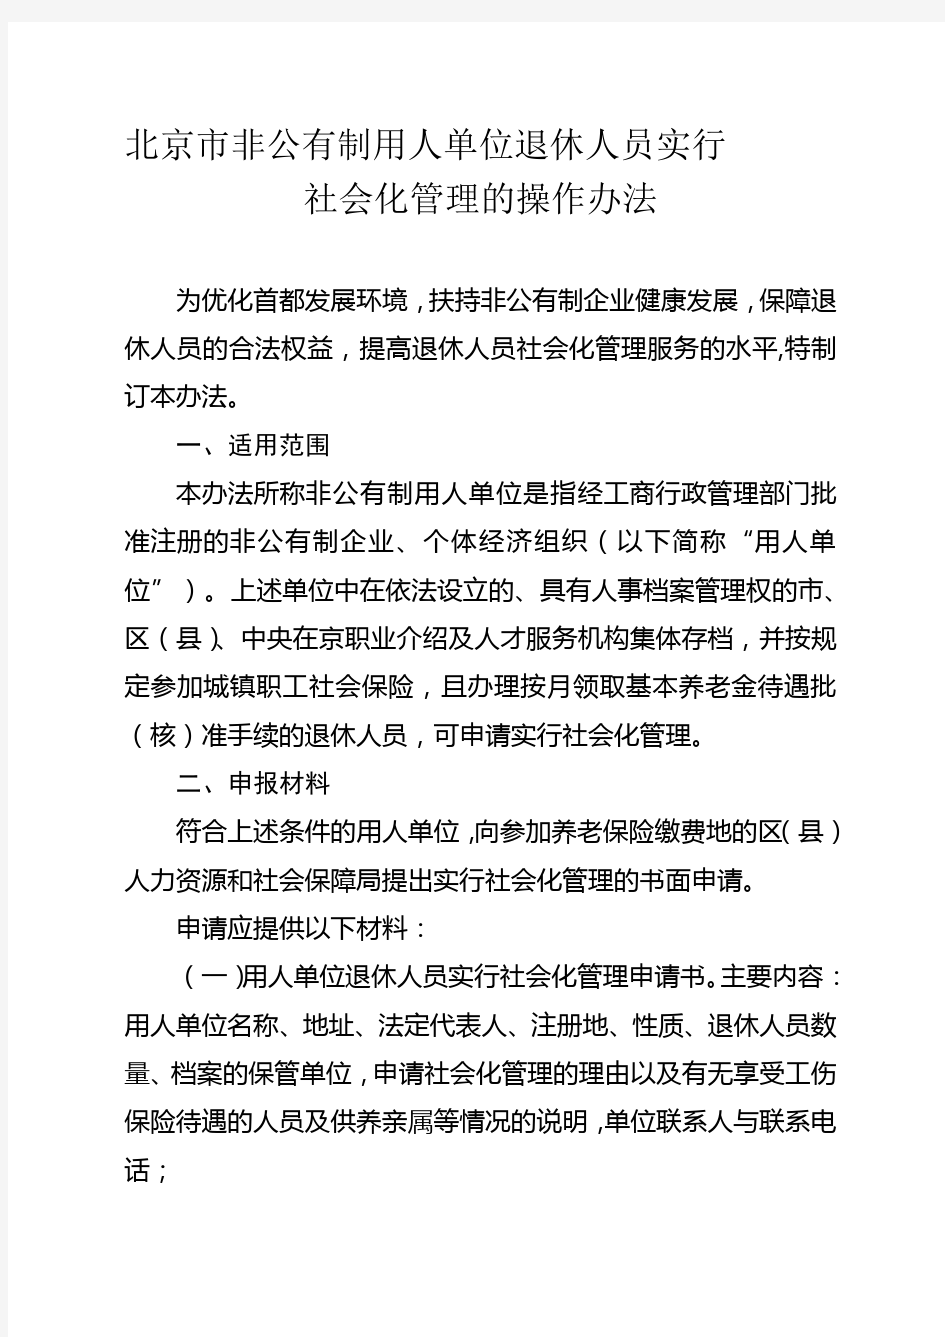 北京市非公有制用人单位退休人员实行社会化管理的操作办法